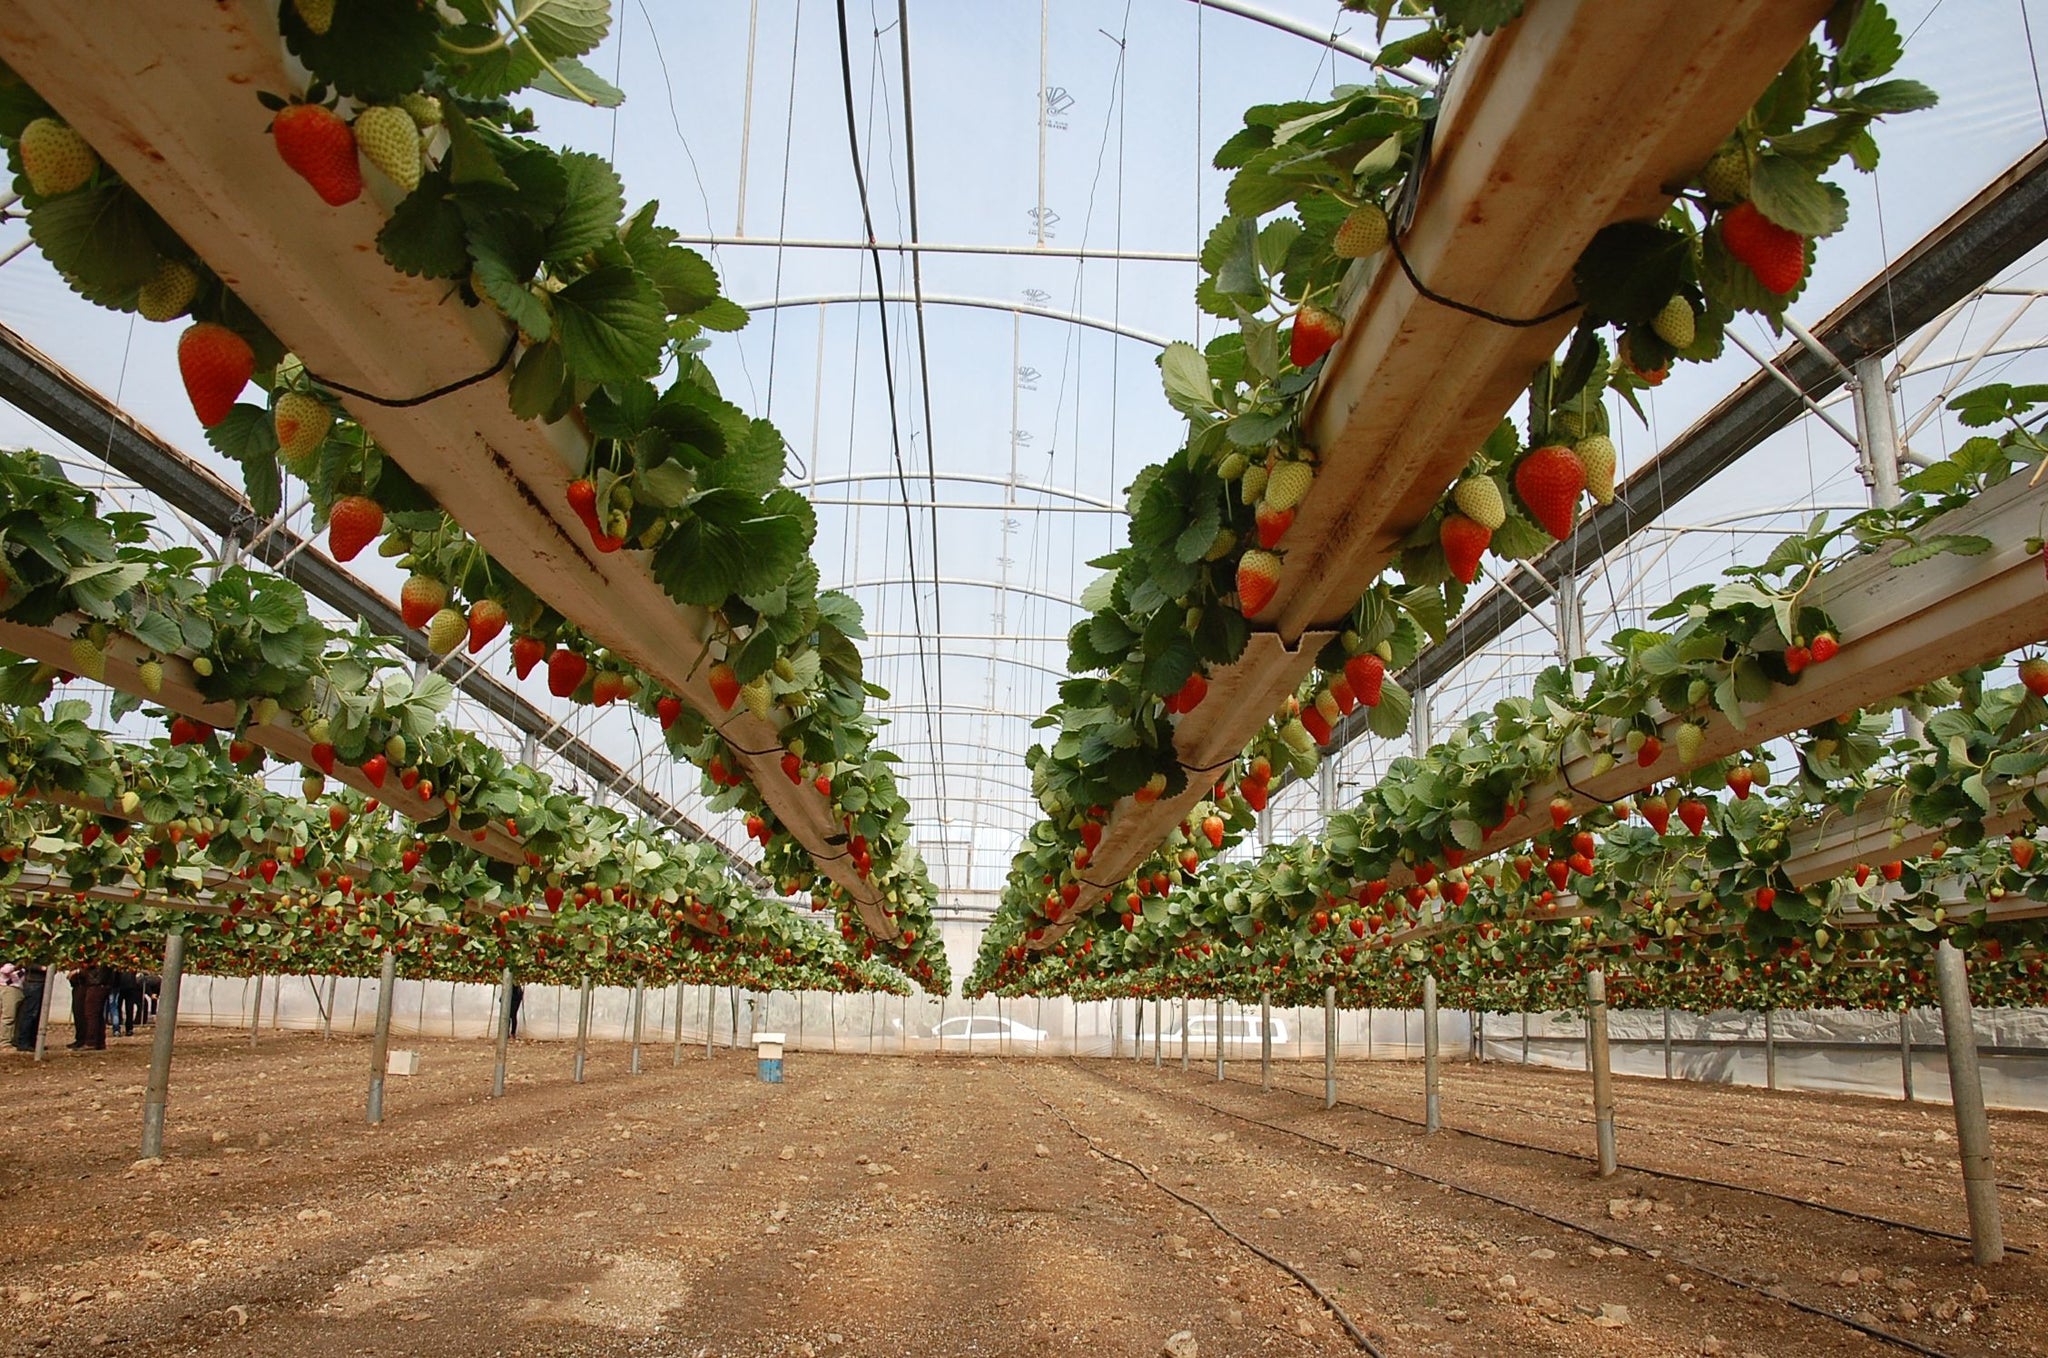 Growing Strawberries Overhead in Israel